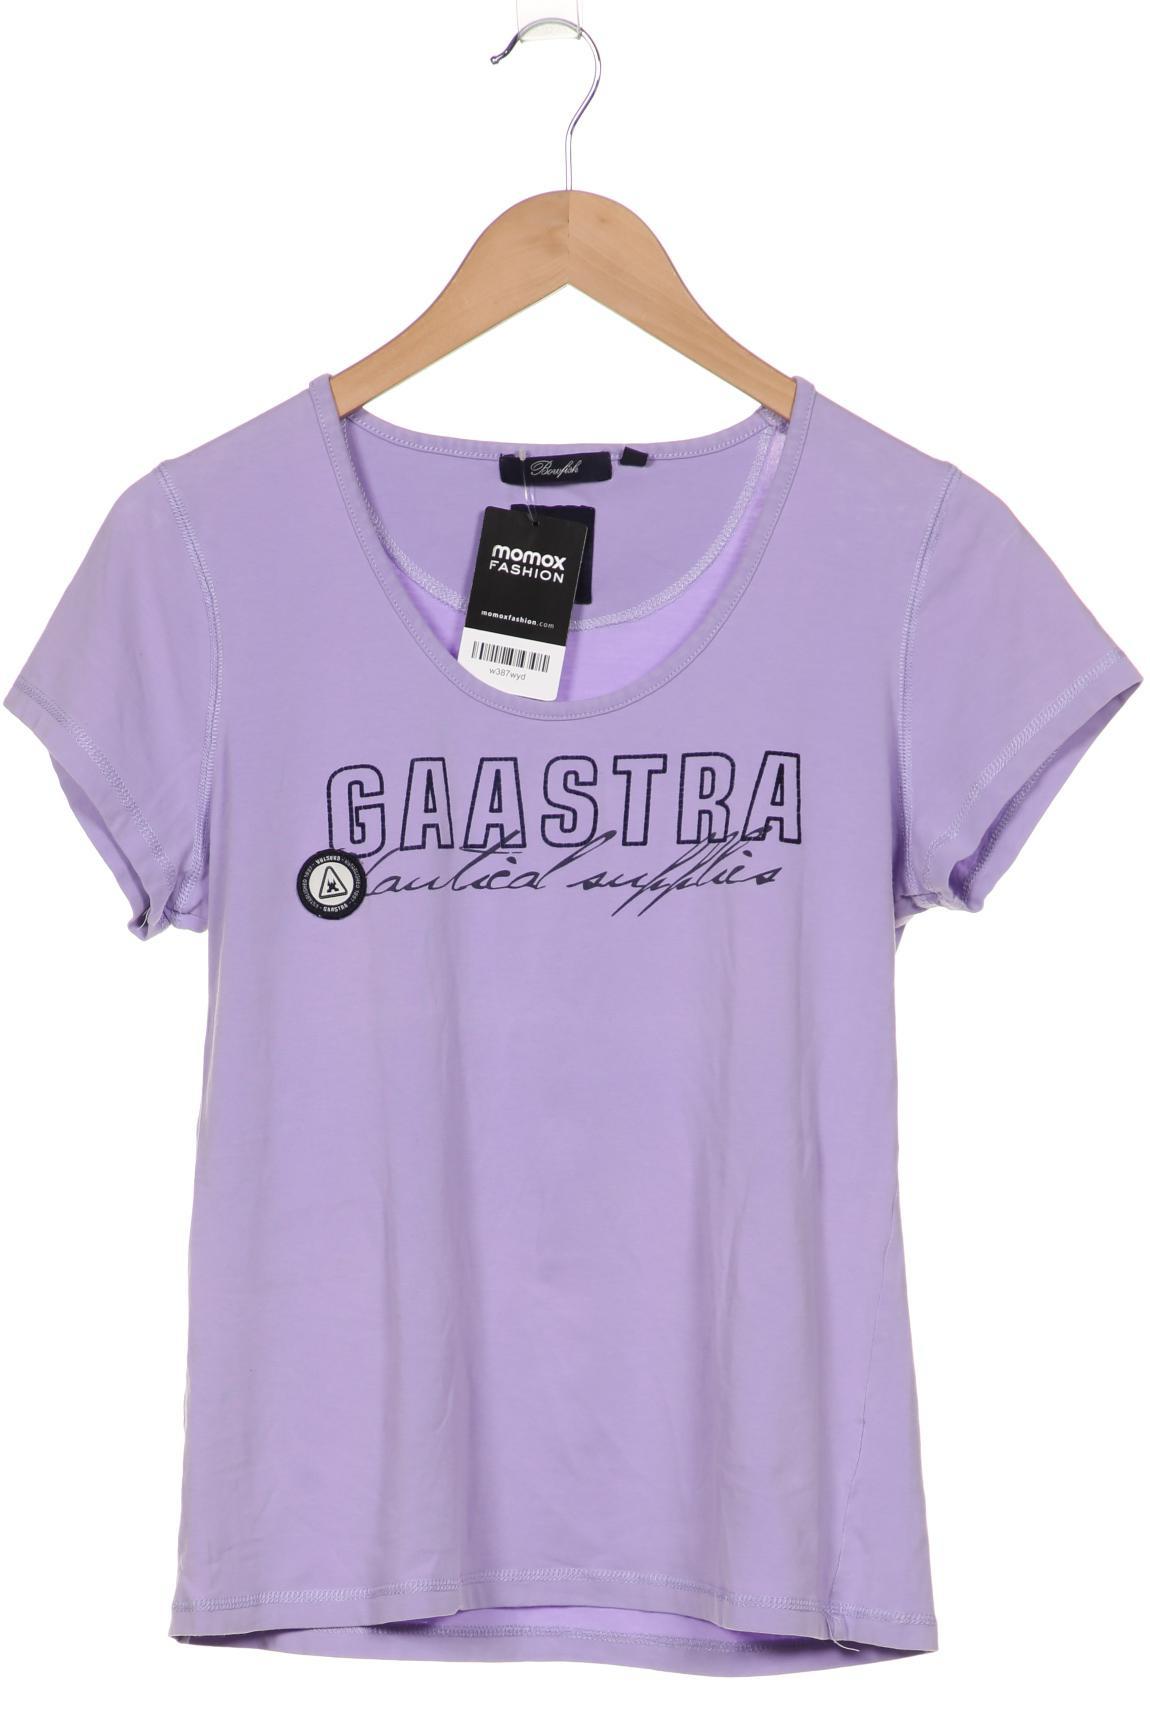 Gaastra Damen T-Shirt, flieder von Gaastra